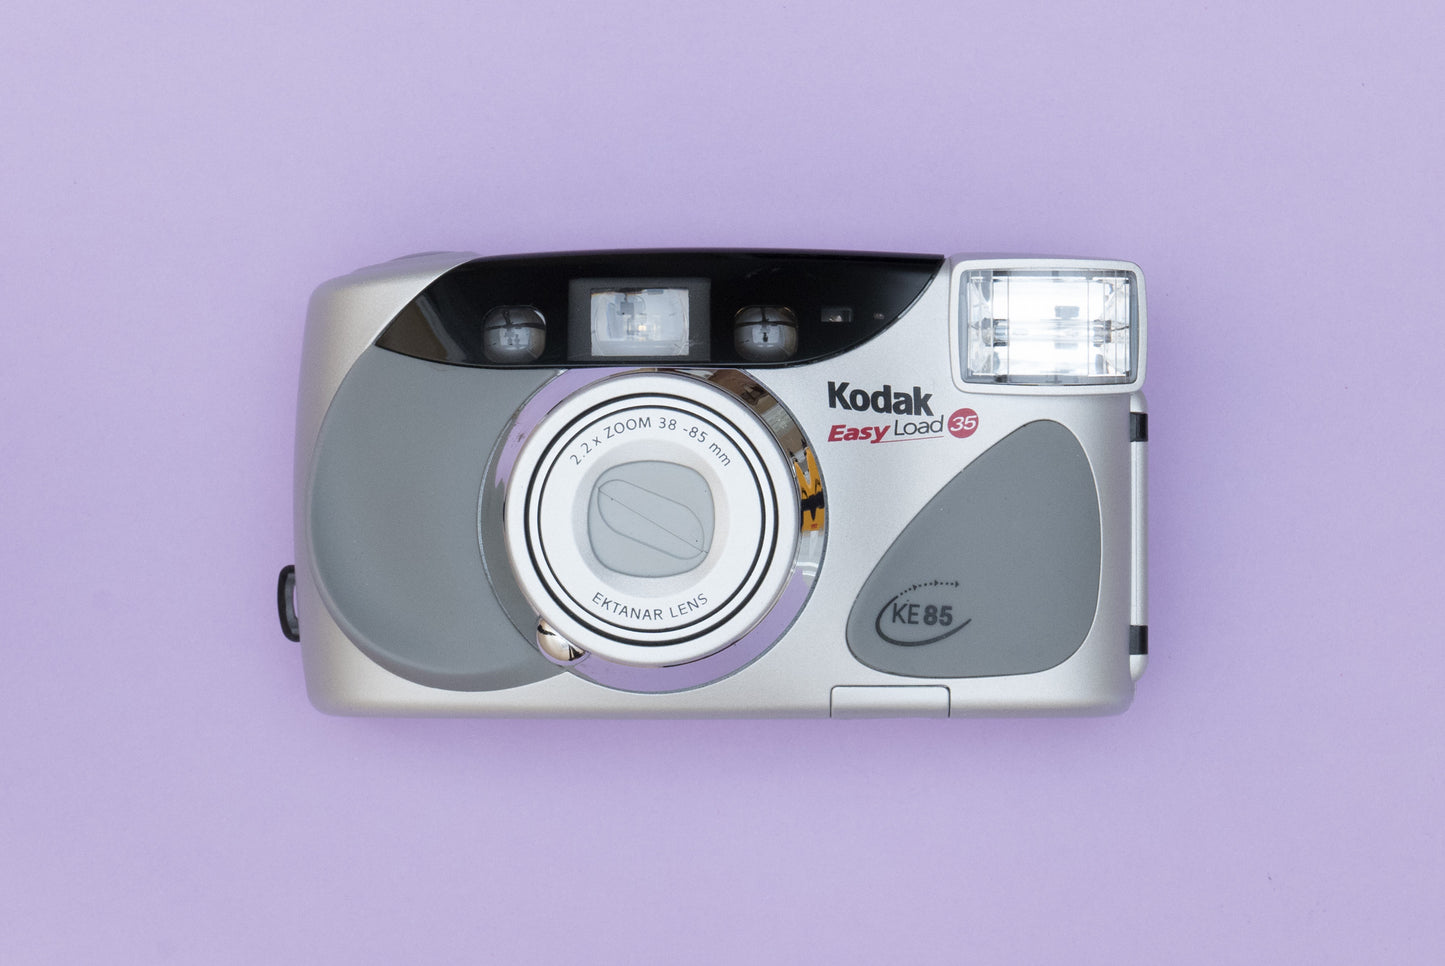 Kodak EasyLoad KE85 Compact 35mm Point and Shoot Film Camera